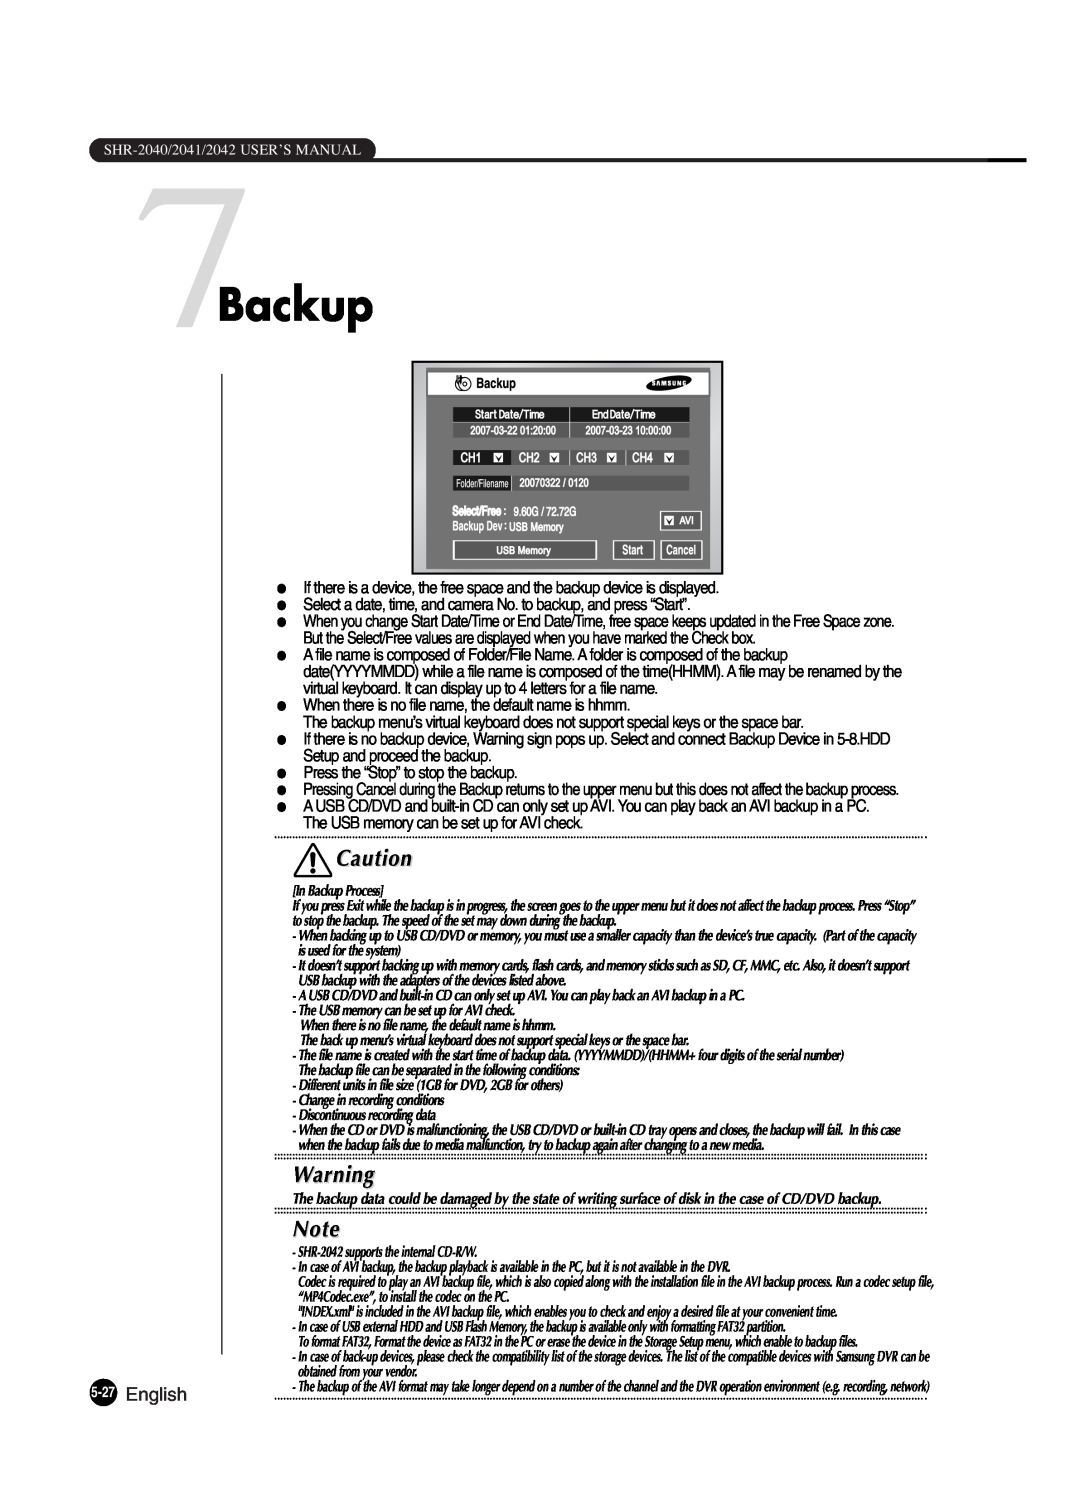 Samsung SHR-2042P250, SHR-2040P250 manual 7Backup, English 